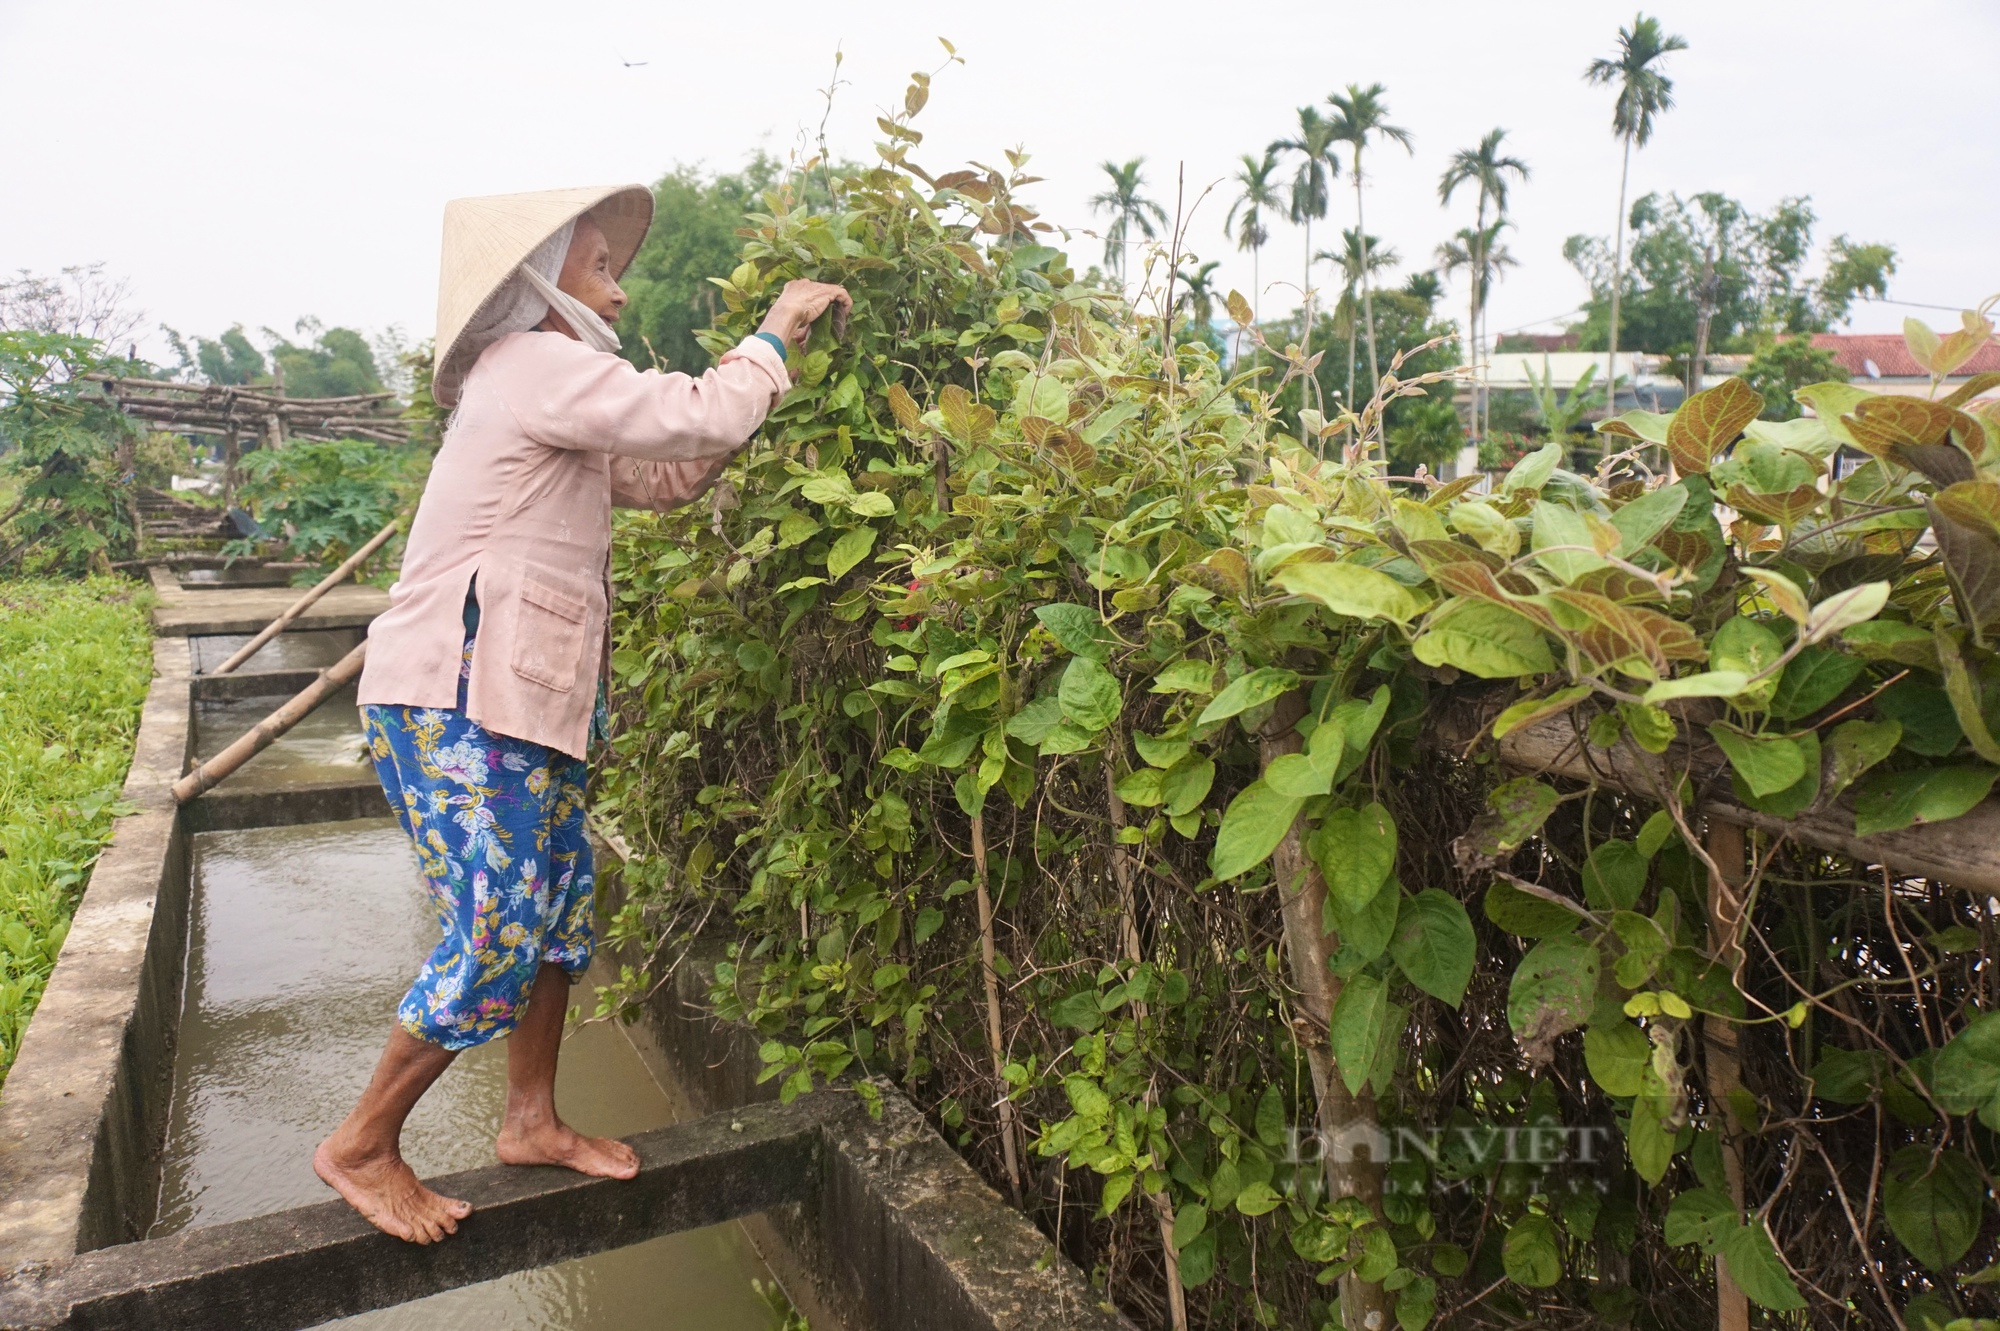 Đà Nẵng: Nhiều nhà trồng lá mơ leo tường rào tạo không gian xanh, dân làng này bất ngờ hái ra tiền - Ảnh 5.